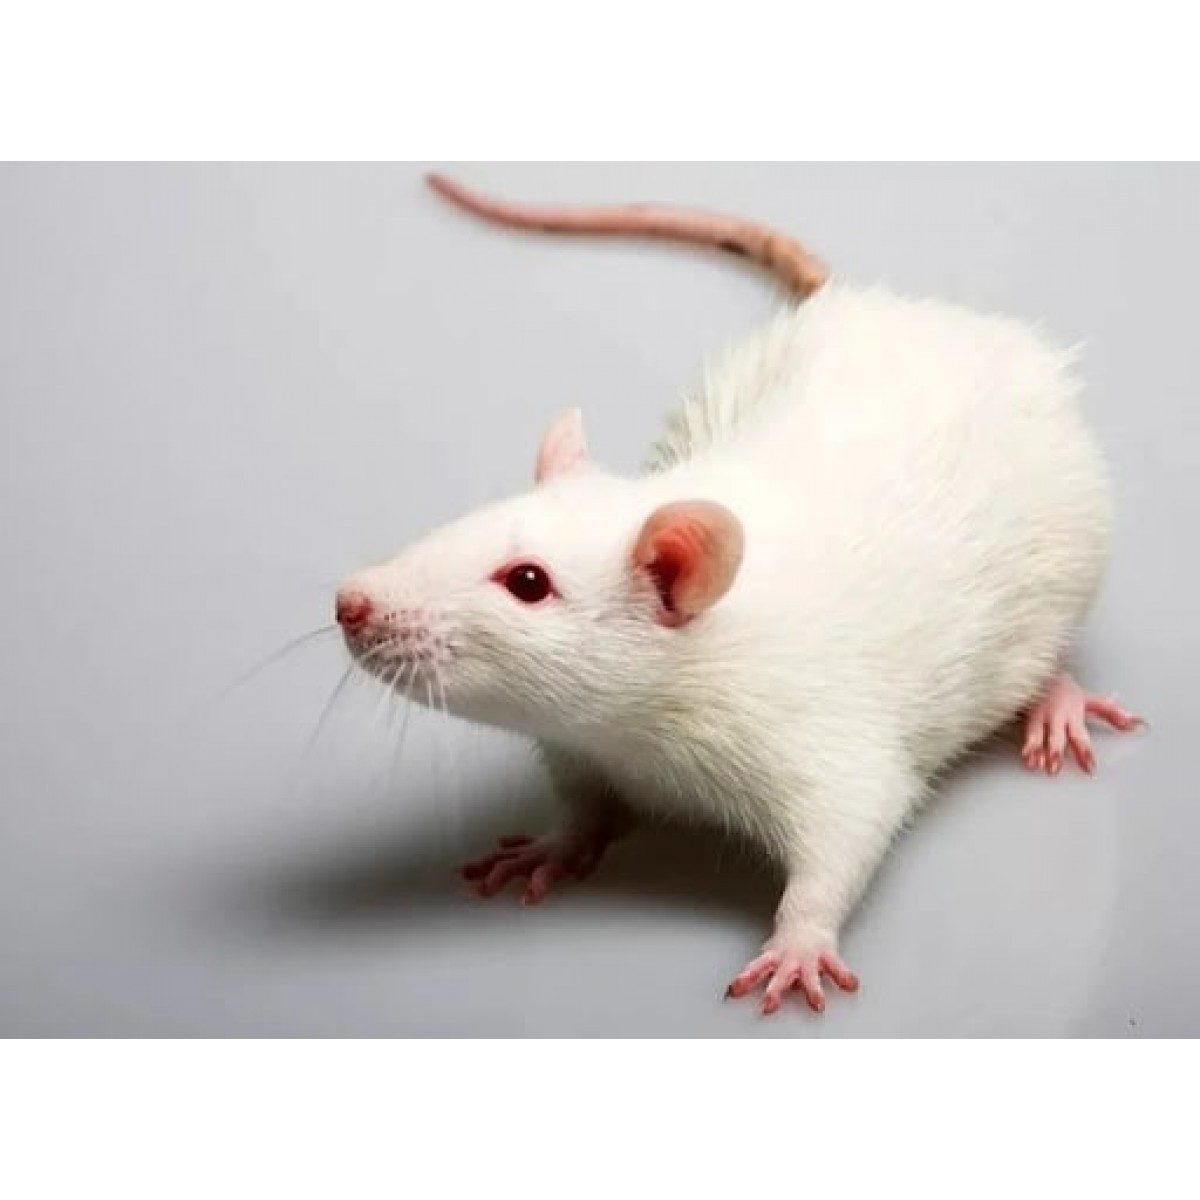 Домашние белые мыши. Крысы породы Вистар. Лабораторные крысы линии Wistar. Щур альбинос. Гималайская крыса альбинос.